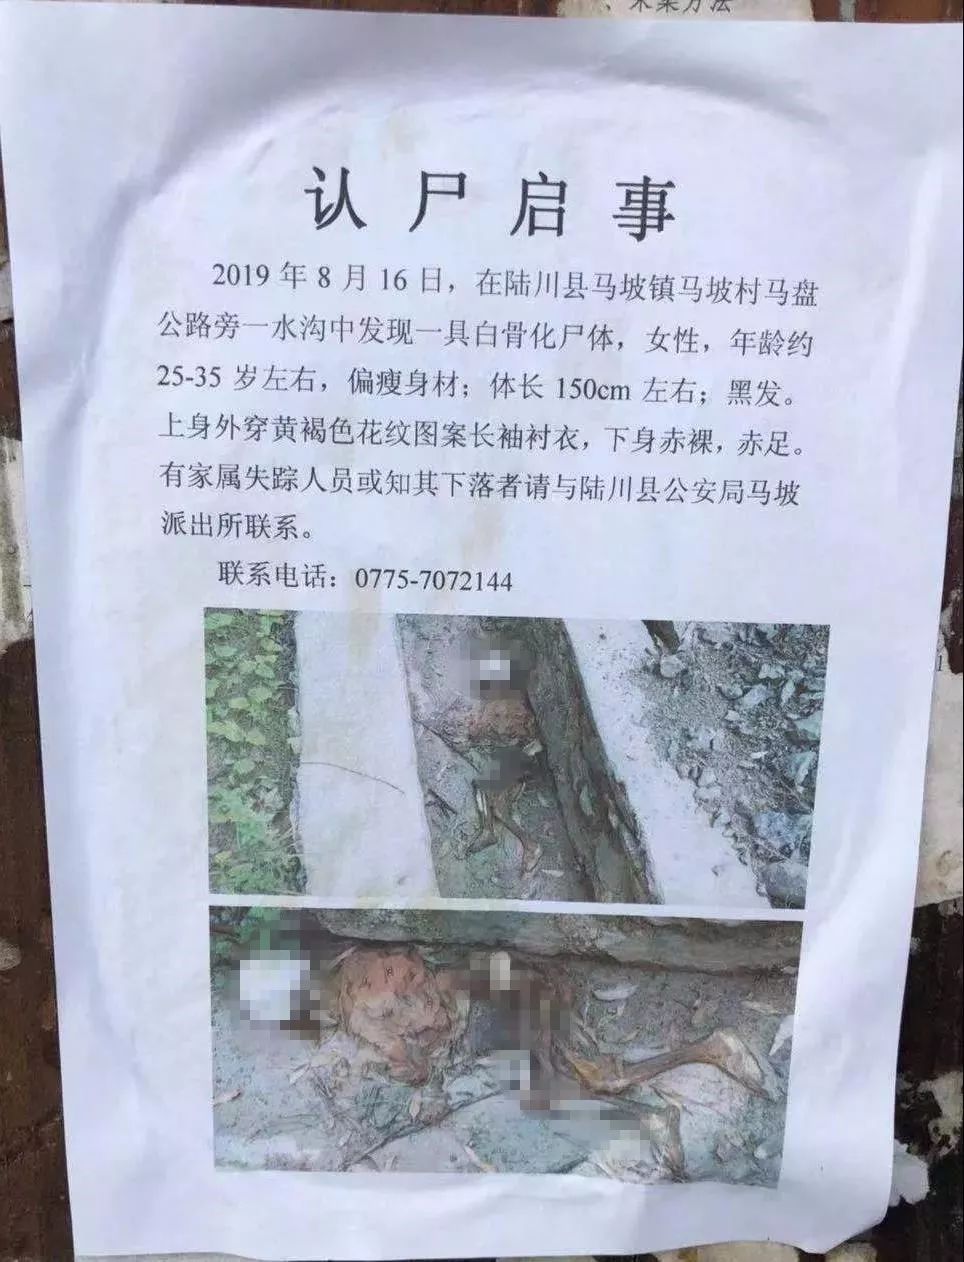 2019年8月16日, 在陆川县马坡镇马坡村马盘公路旁水沟中发现具白骨化